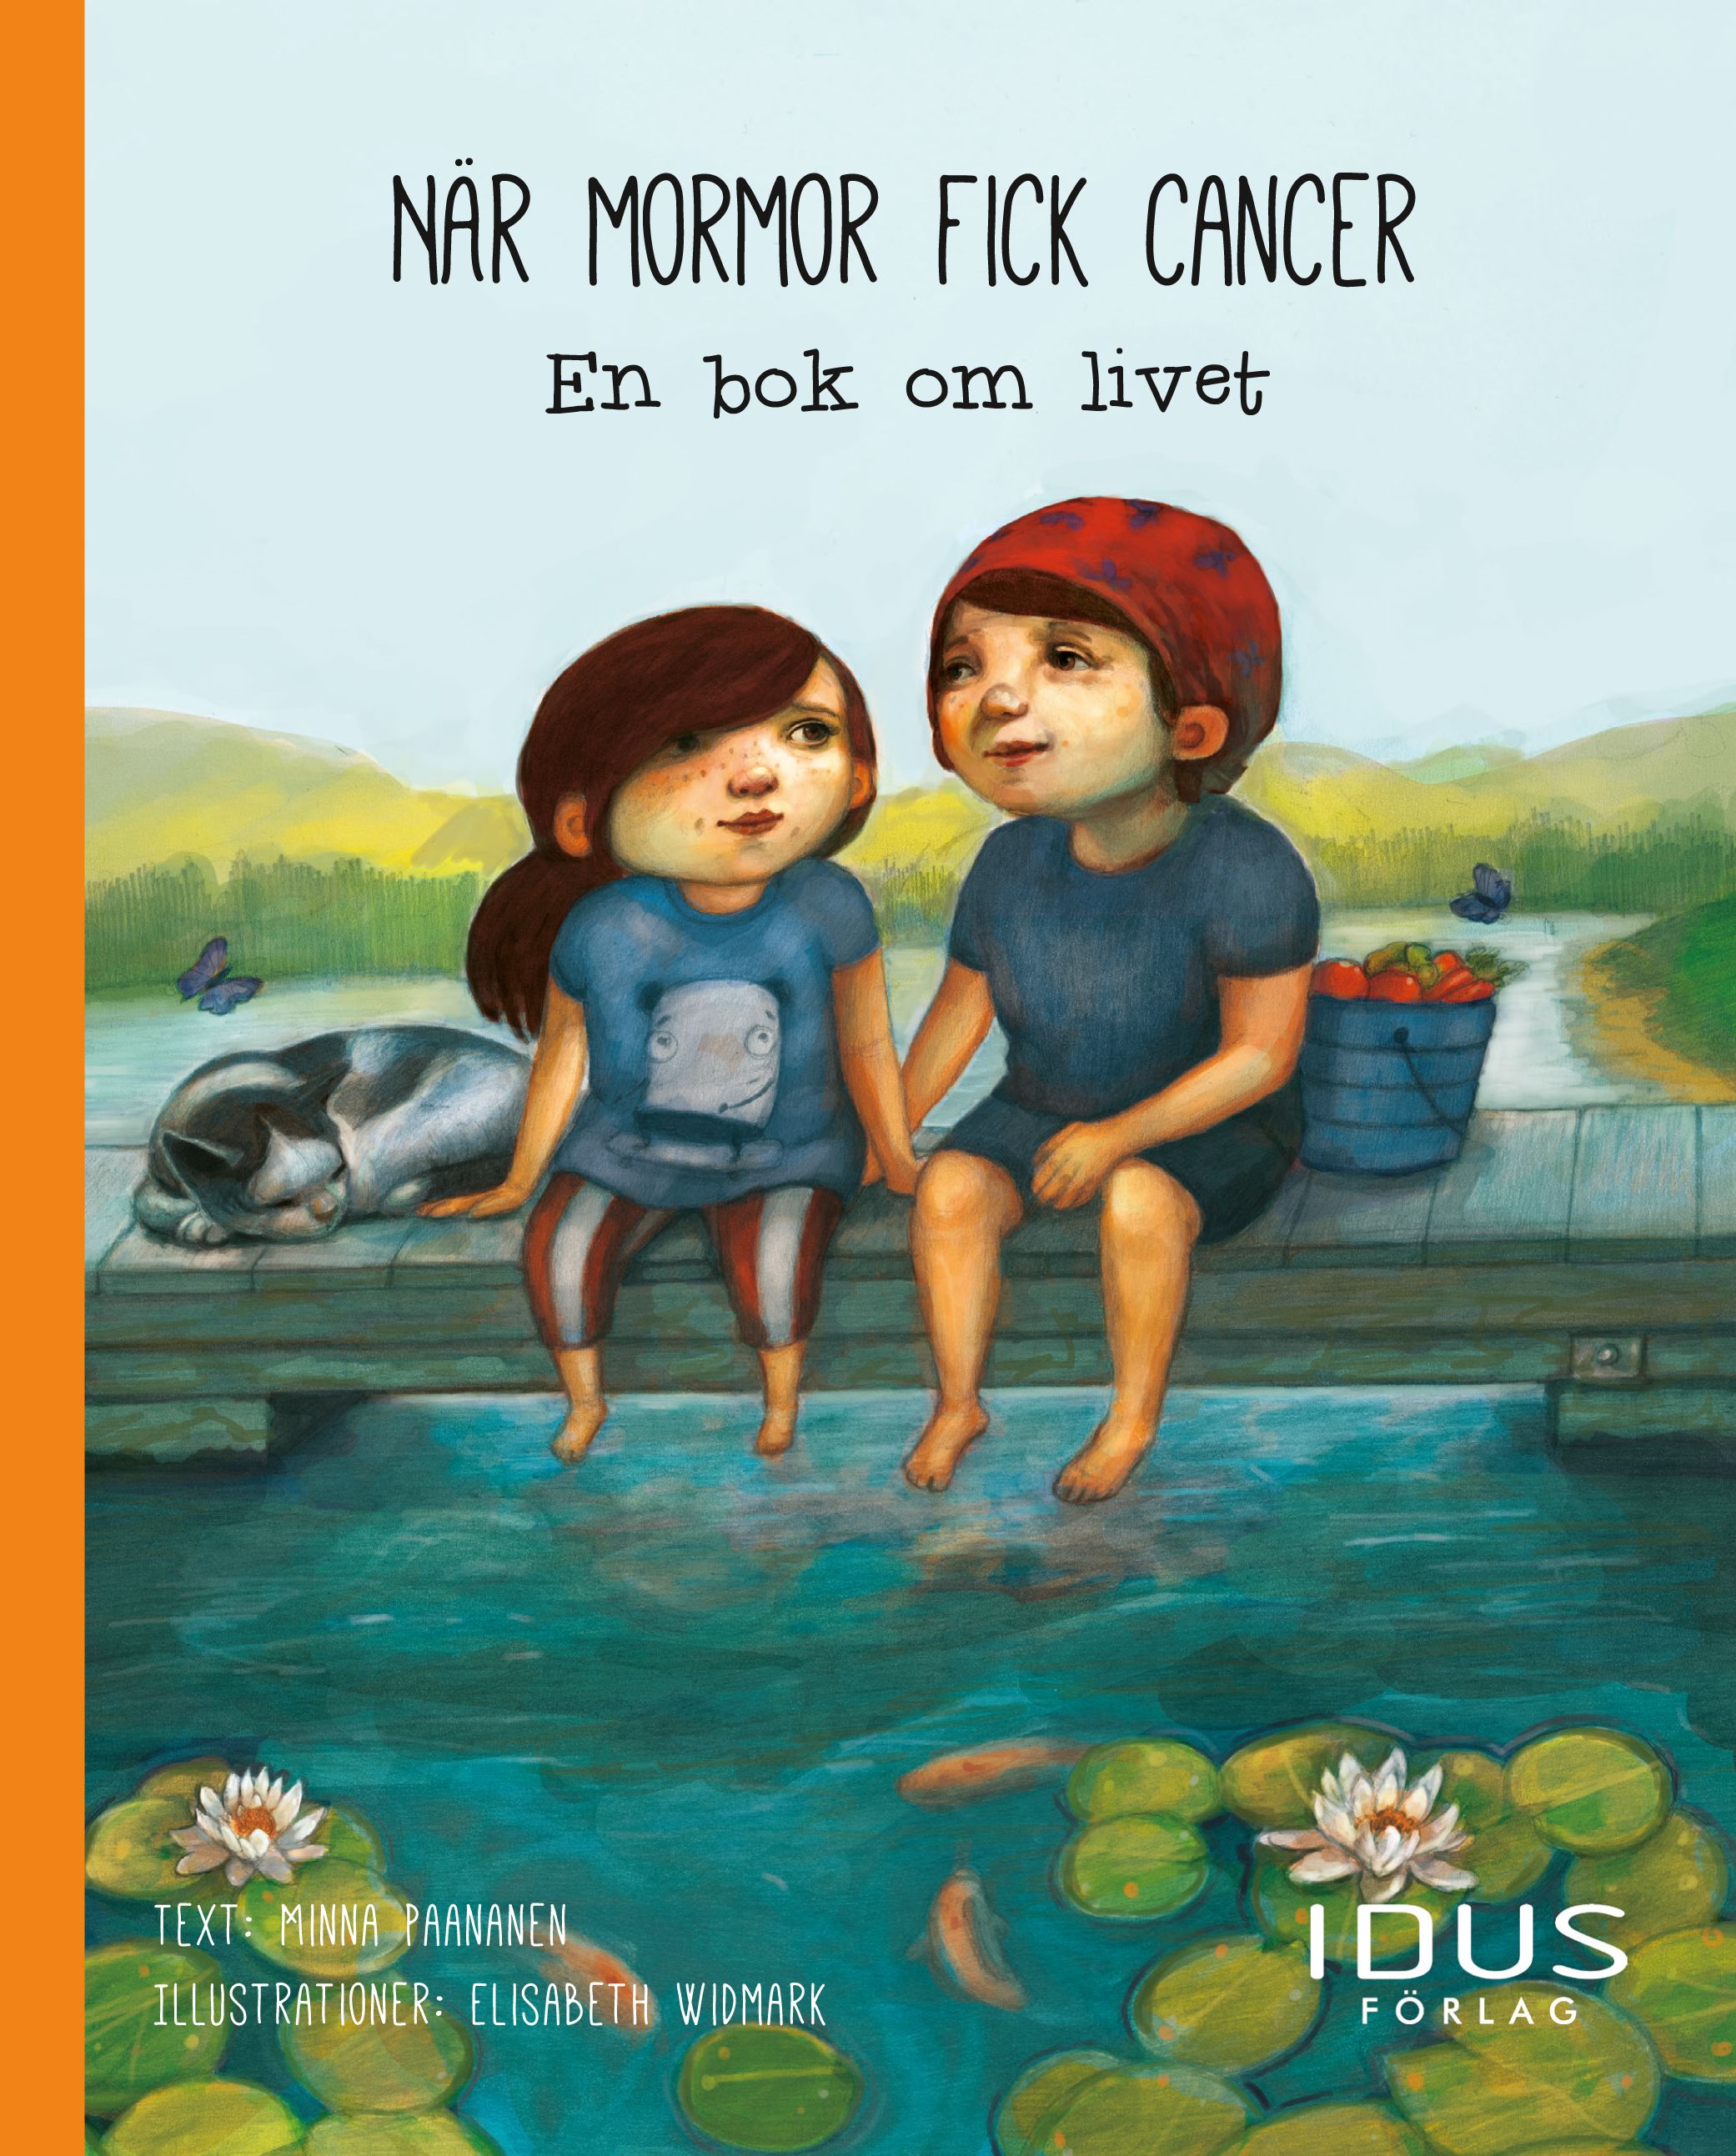 När mormor fick cancer : en bok om livet, eBook by Minna Paananen